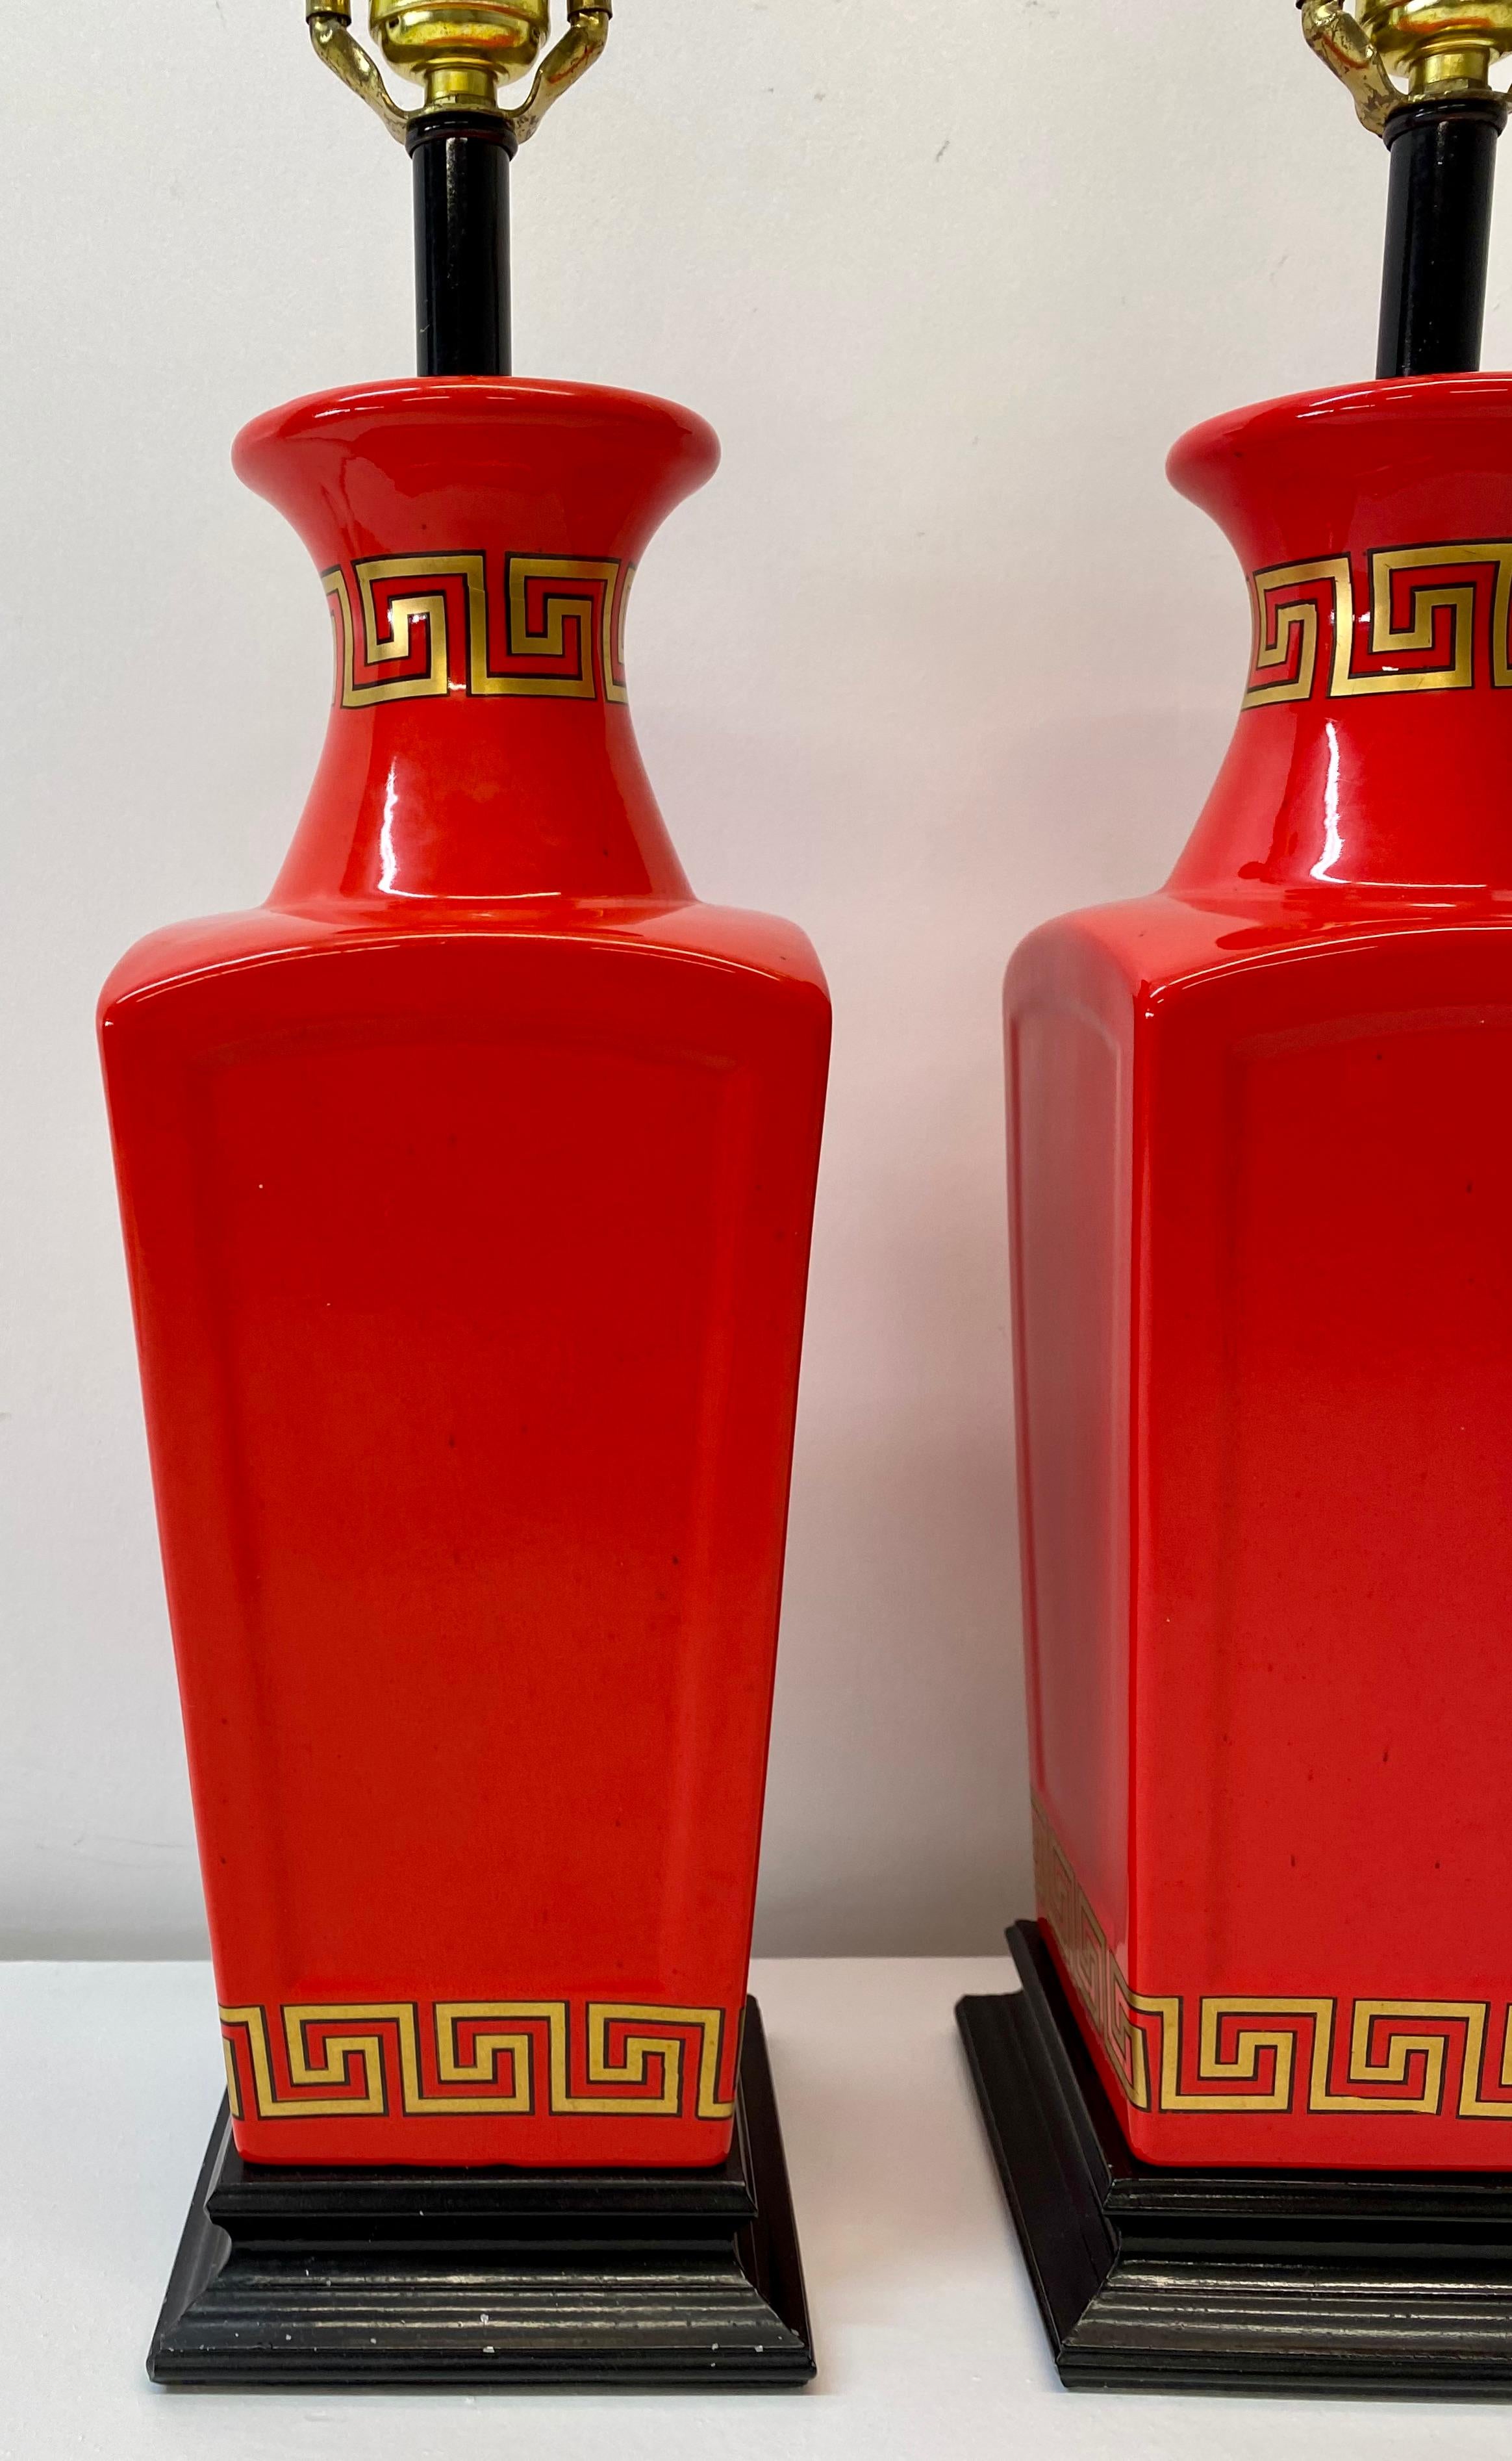 Paire de lampes de table rouges chinoises d'inspiration asiatique, circa 1960.

Motif géométrique peint à la main en or avec bordure noire 

Un rouge éclatant absolument magnifique, accentué de noir et d'or.

Ces lampes sont parmi les plus